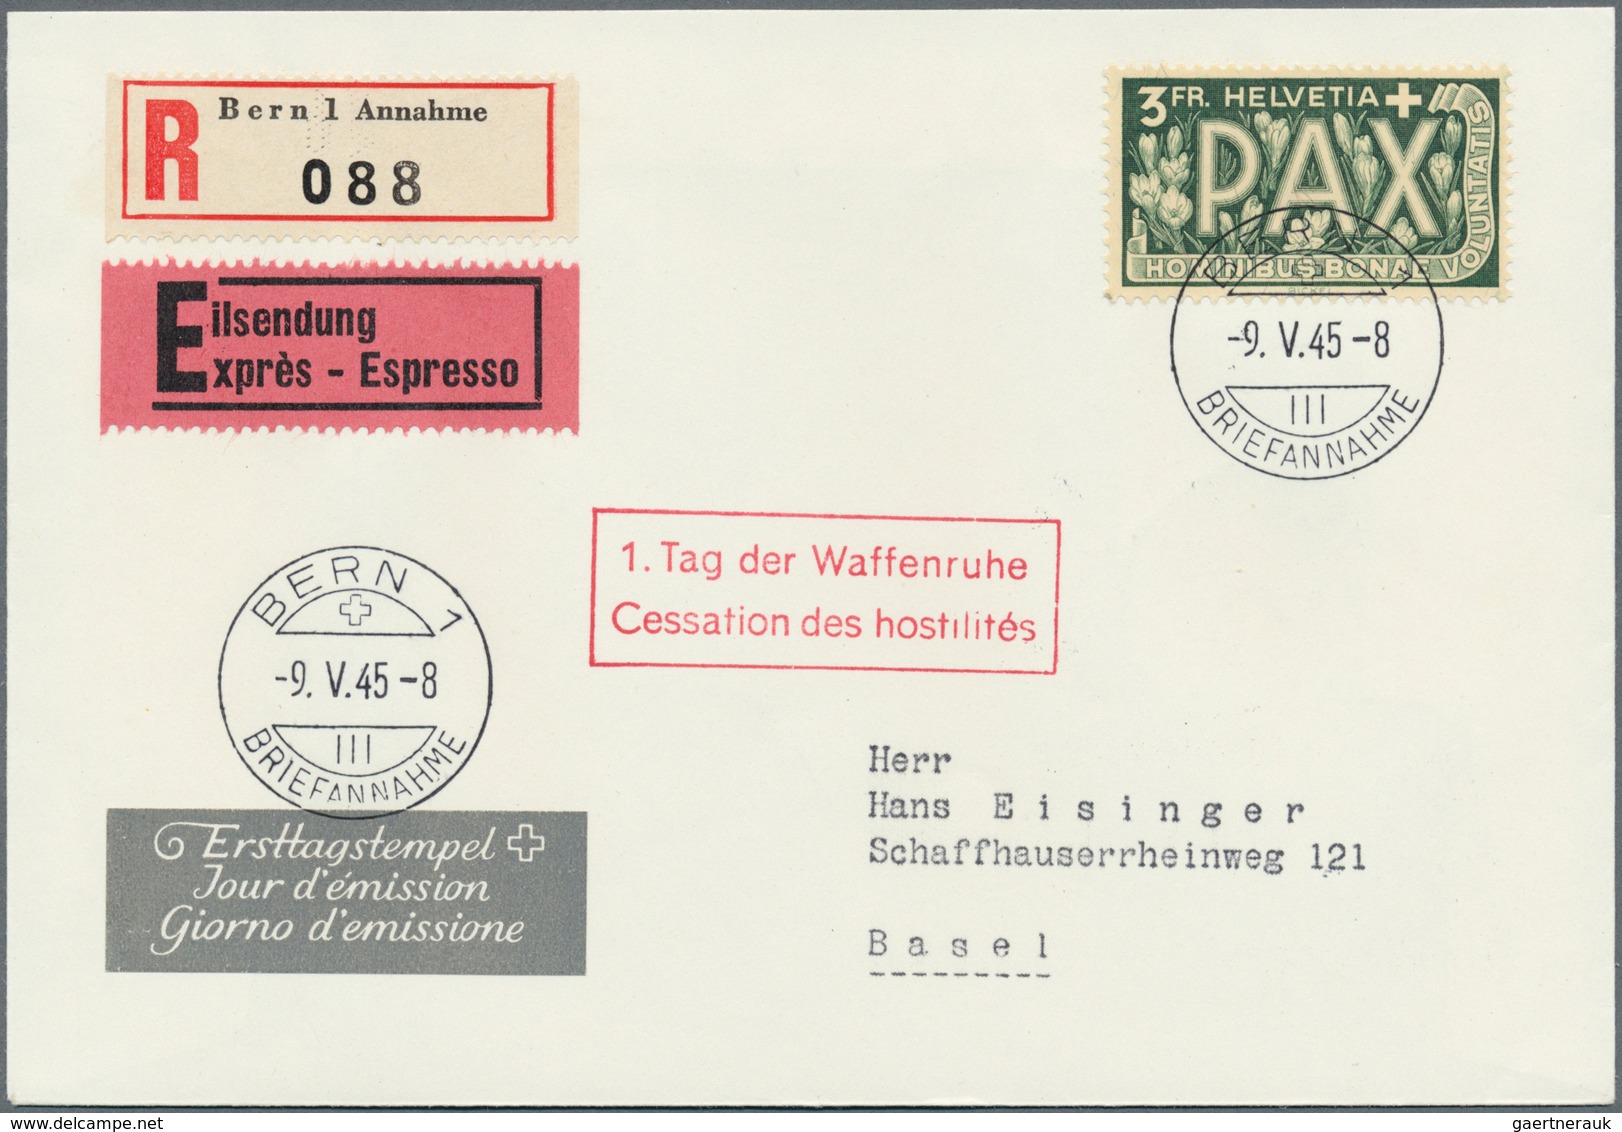 16122C Schweiz: 1945, "Ausgabe zum Waffenstillstand 1945", 5 C. - 10 Fr. Pax, traumhaft schöne FDC-Serie au